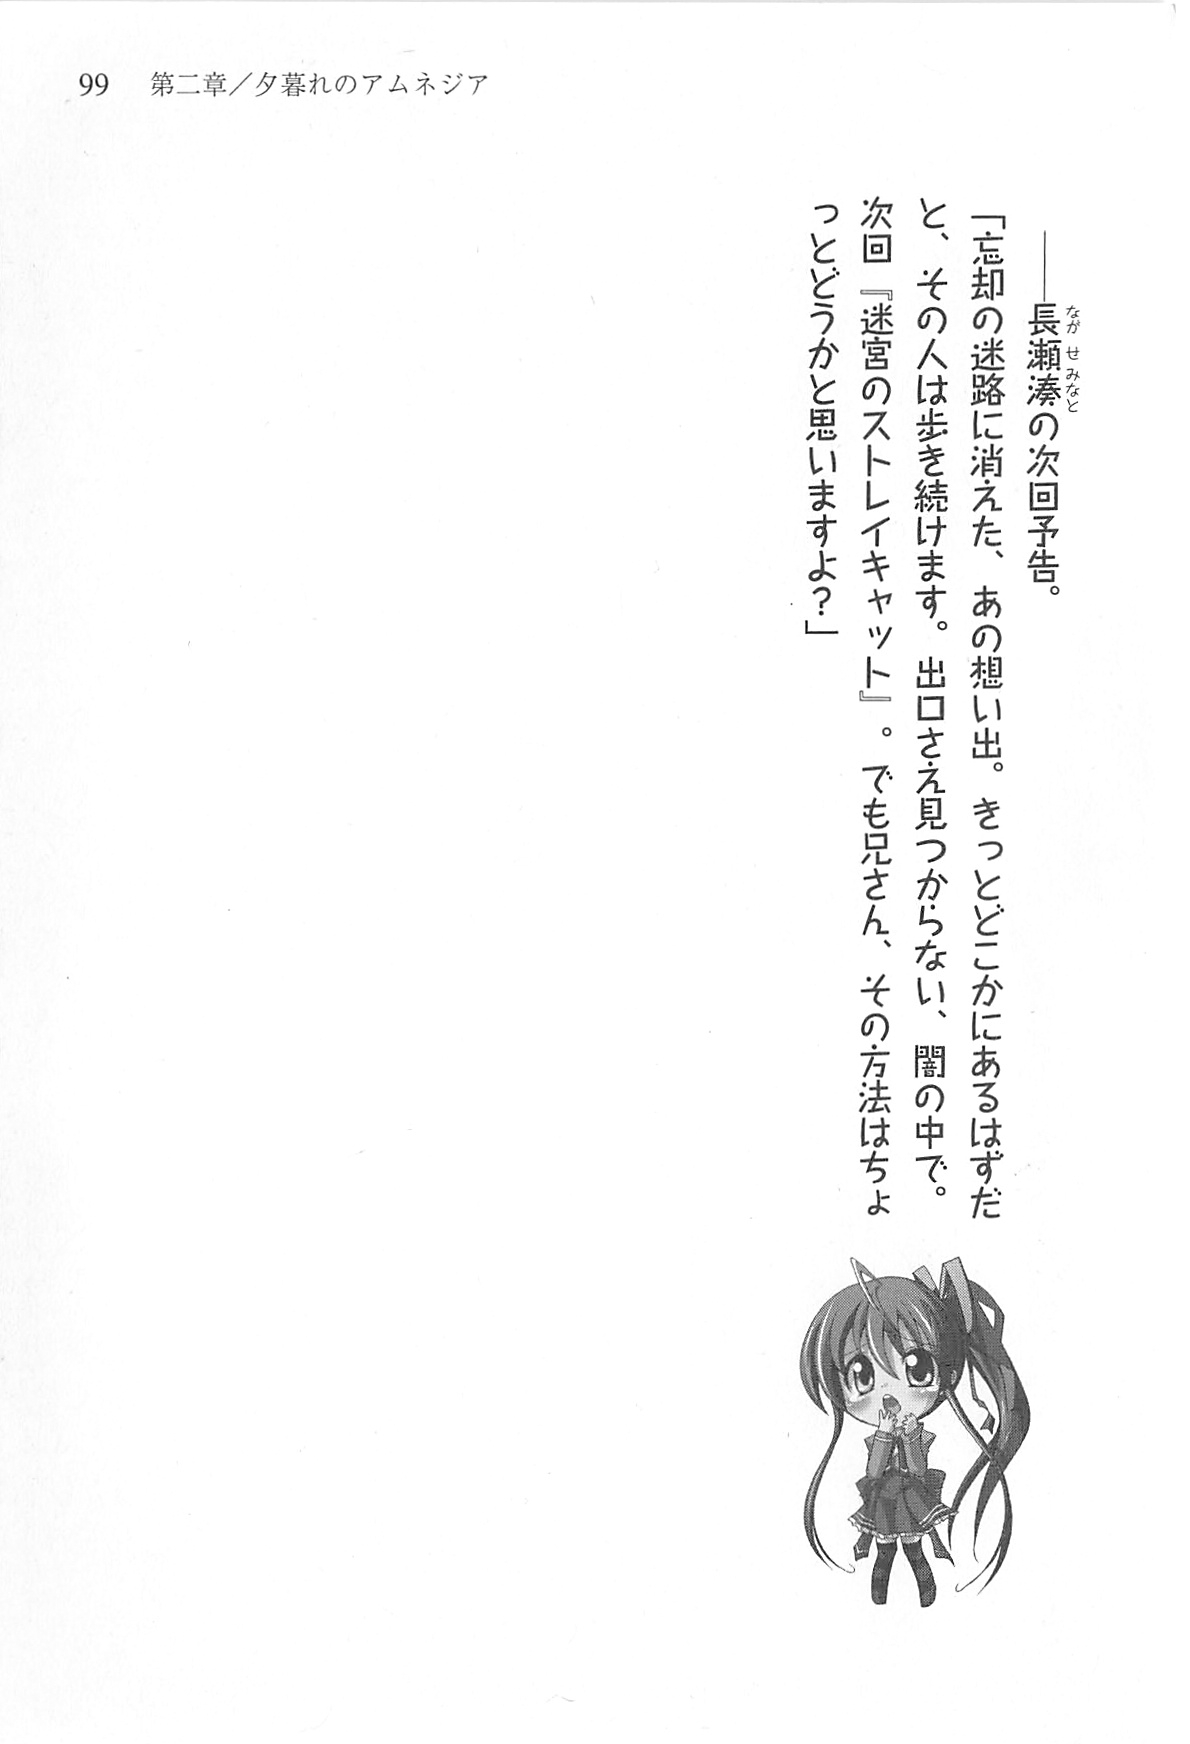 [Shinji Mao, Pierre Yoshio] Akaneiro ni Somaru Saka - Katagiri Yuuhi no Koiiro 99